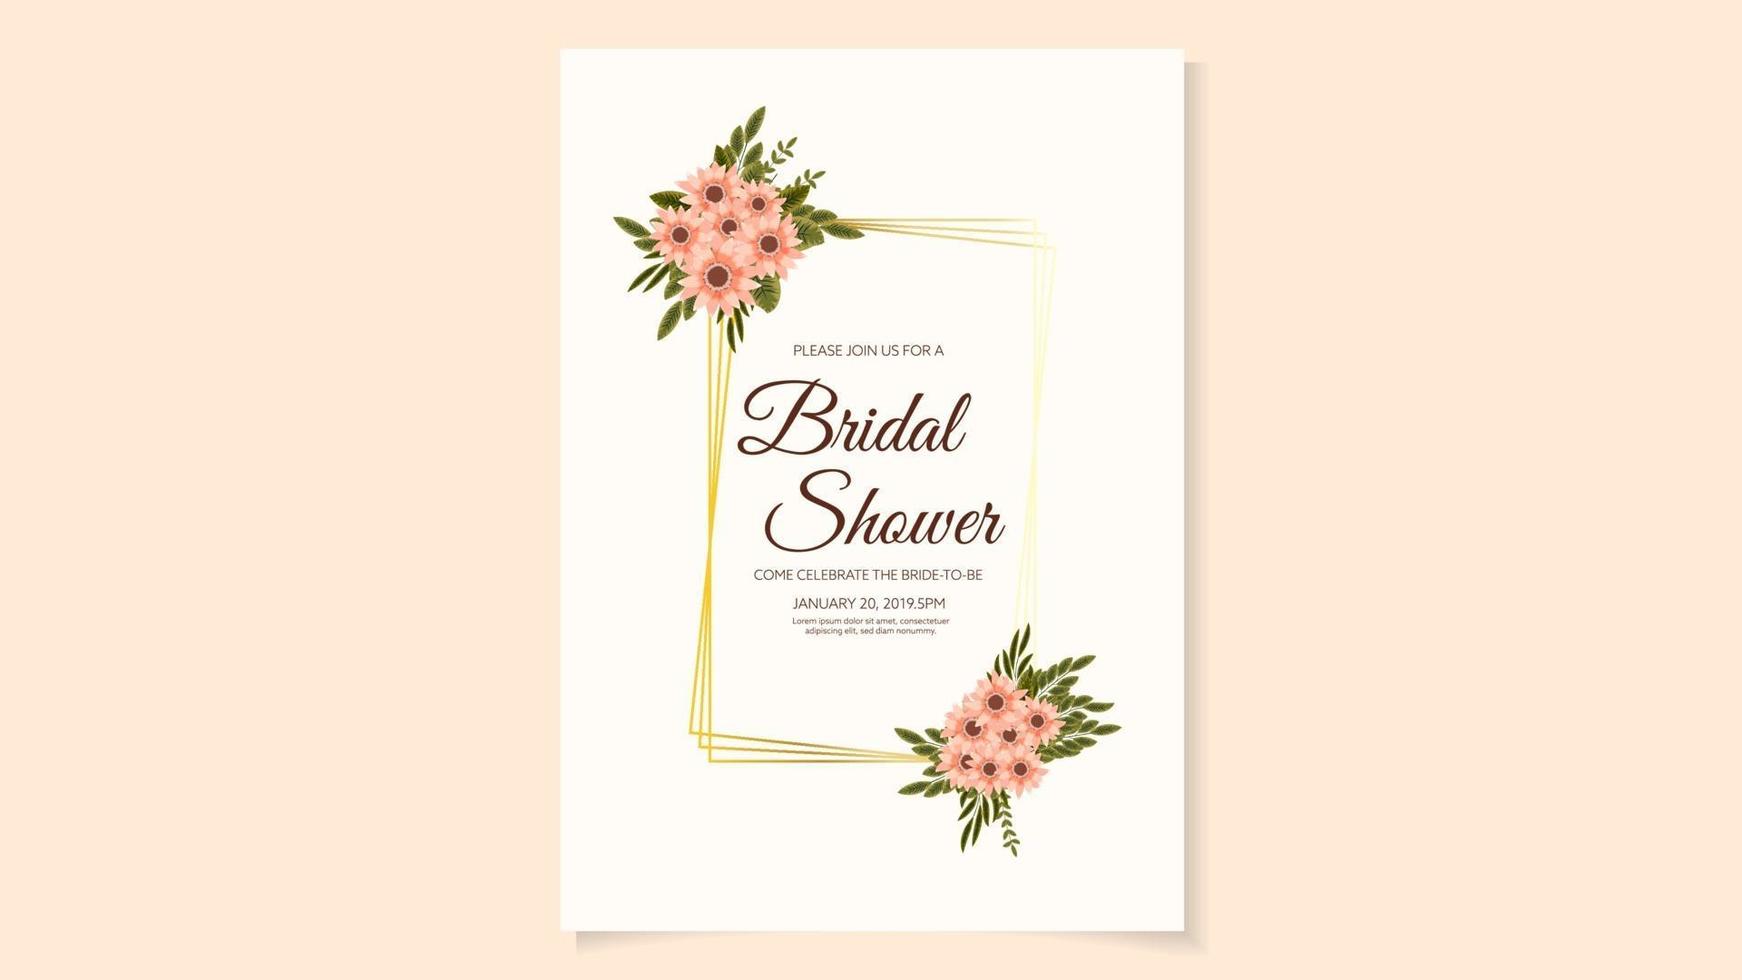 Bridal Shower Invitation Card Design in flowers floral design vector